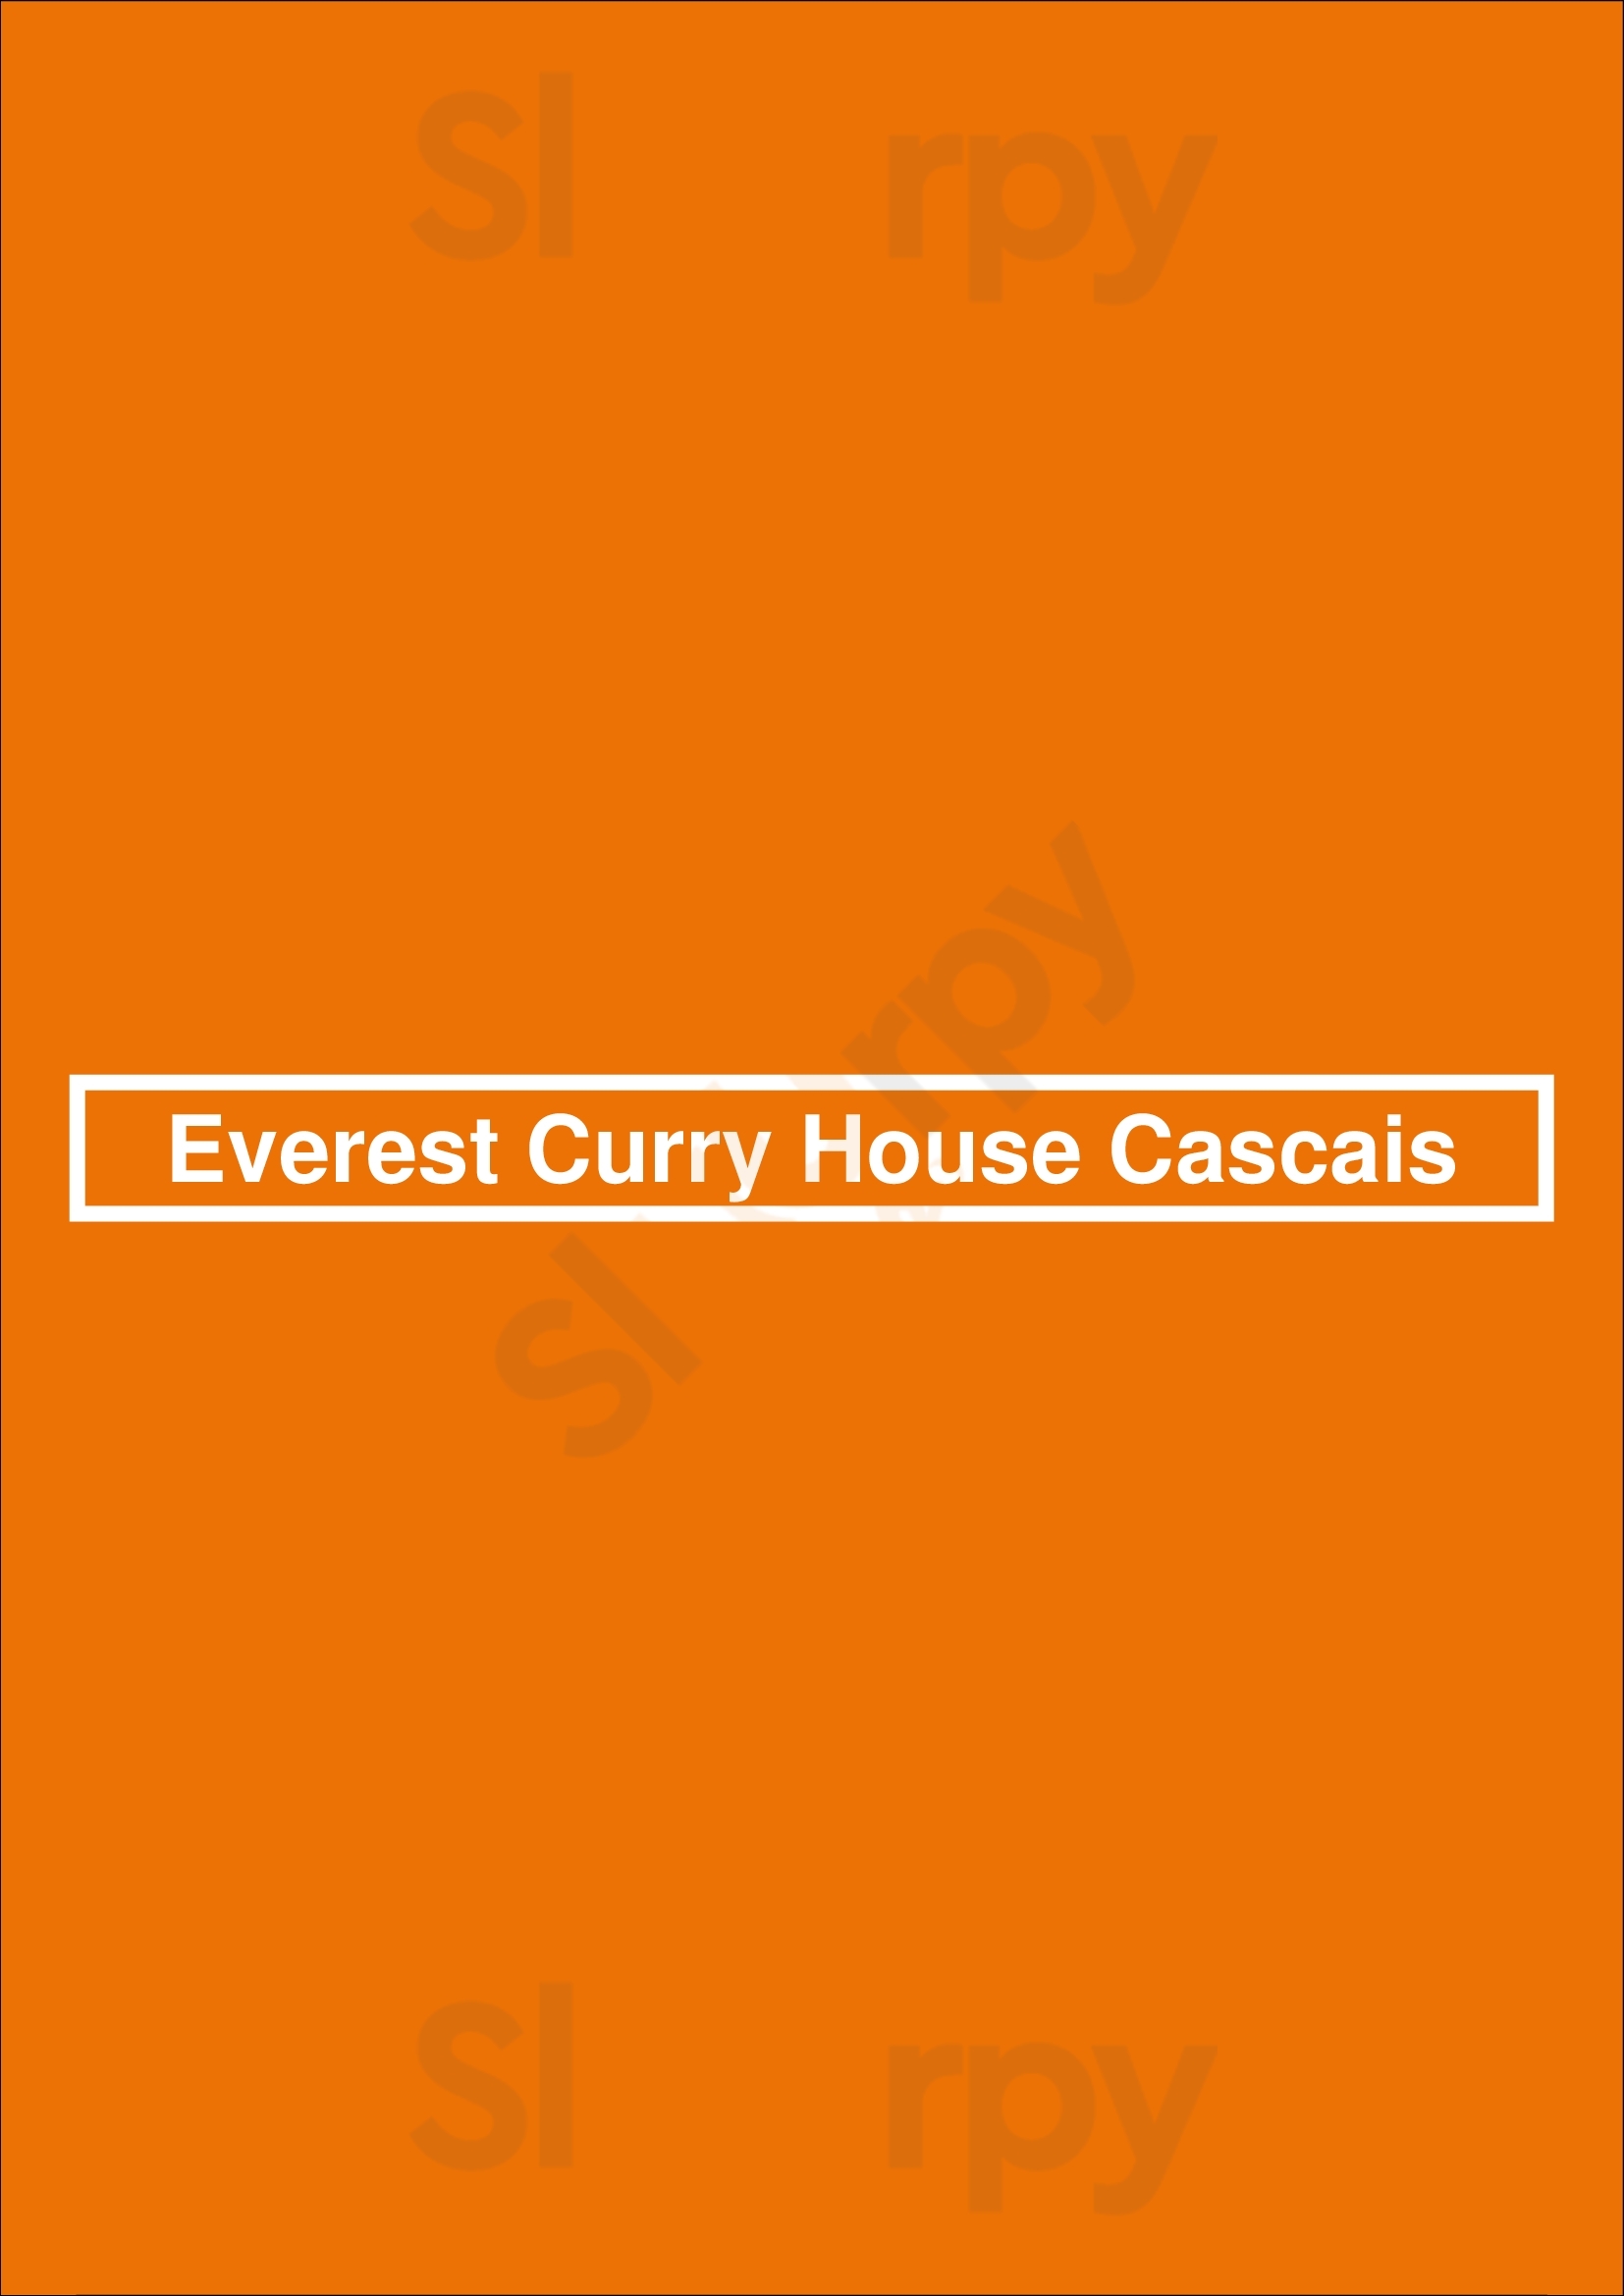 Everest Curry House Cascais Cascais Menu - 1